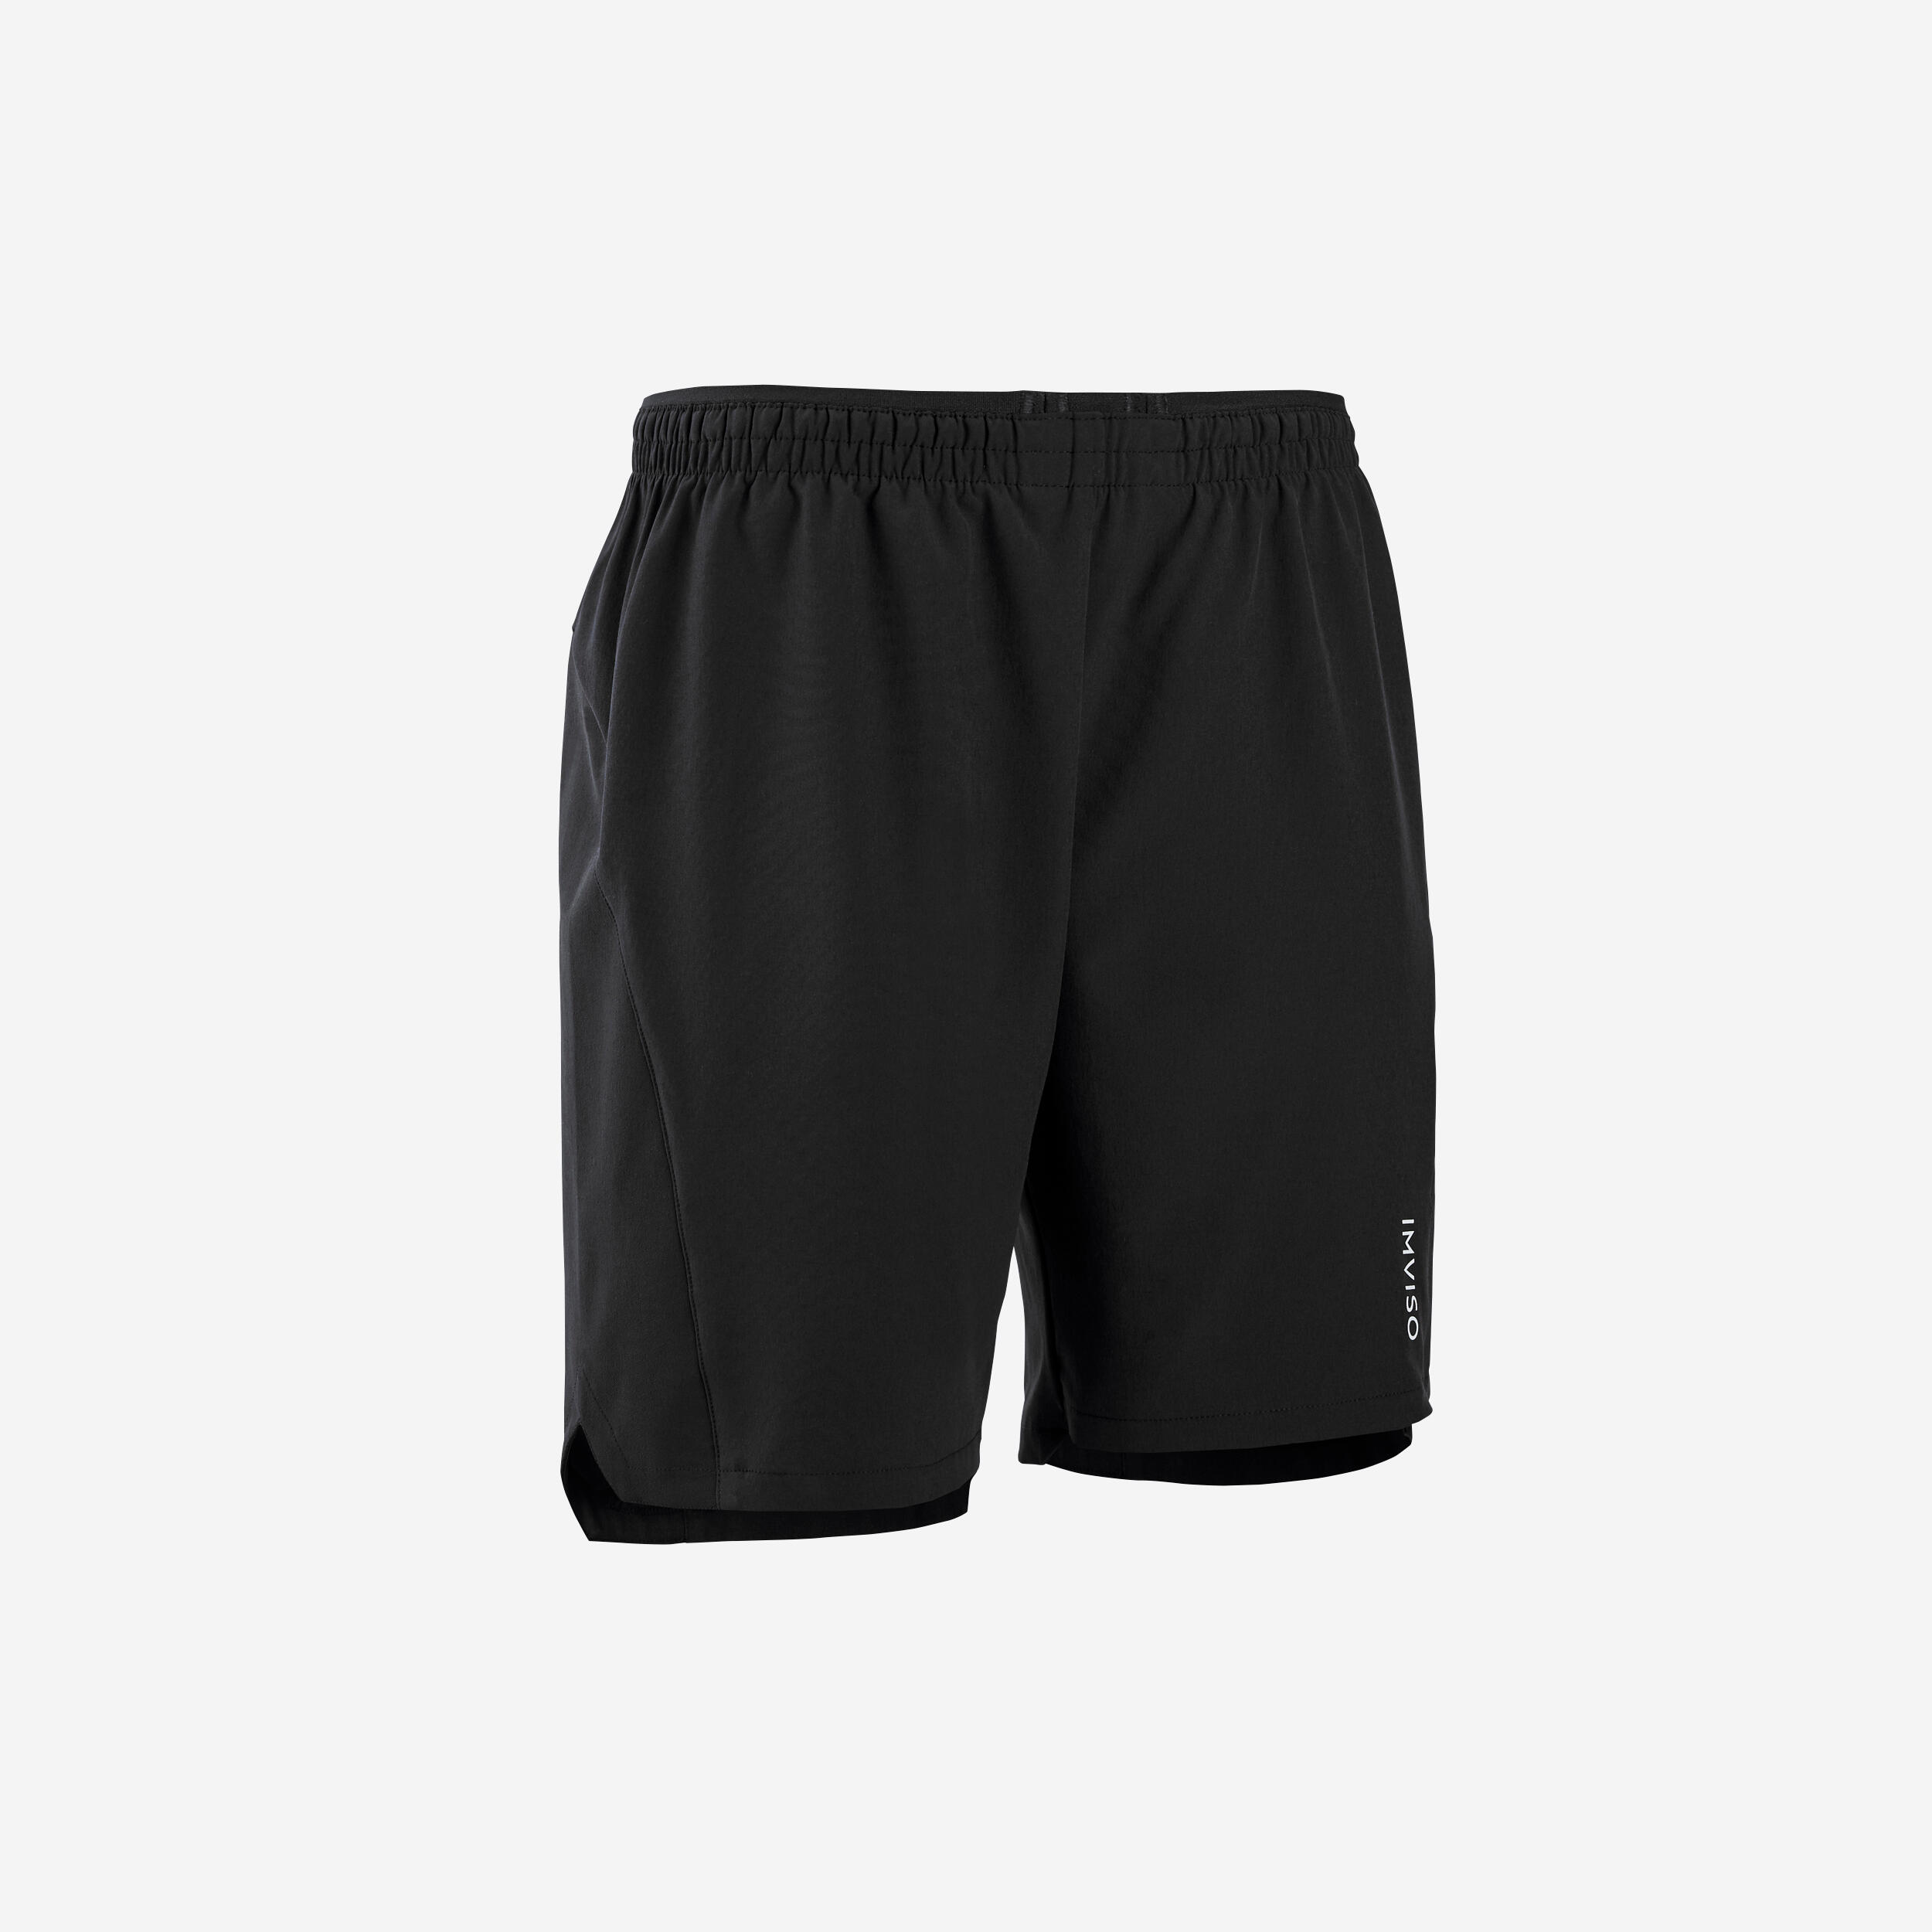 Men's Soccer Shorts - F 500 Black - [EN] smoked black - Kipsta - Decathlon